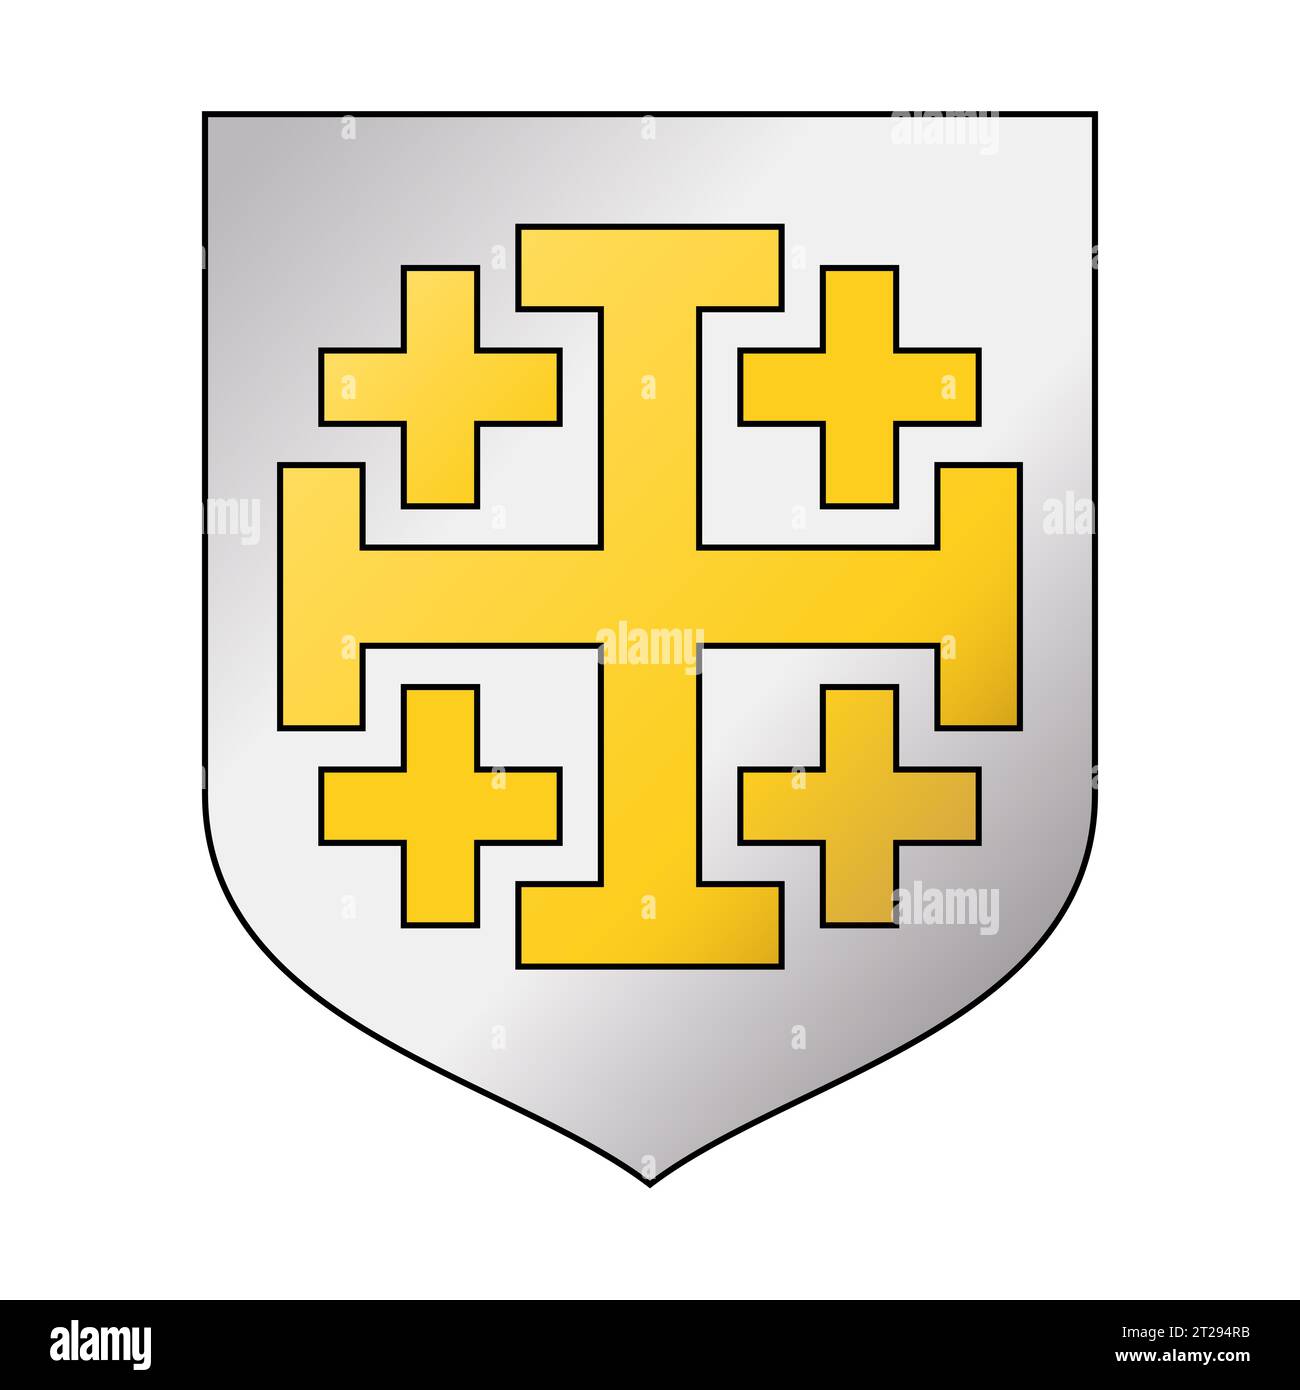 Regno Latino di Gerusalemme. Stemma d'argento con una croce di Gerusalemme dorata, una croce potente circondata da piccole croci greche. Foto Stock